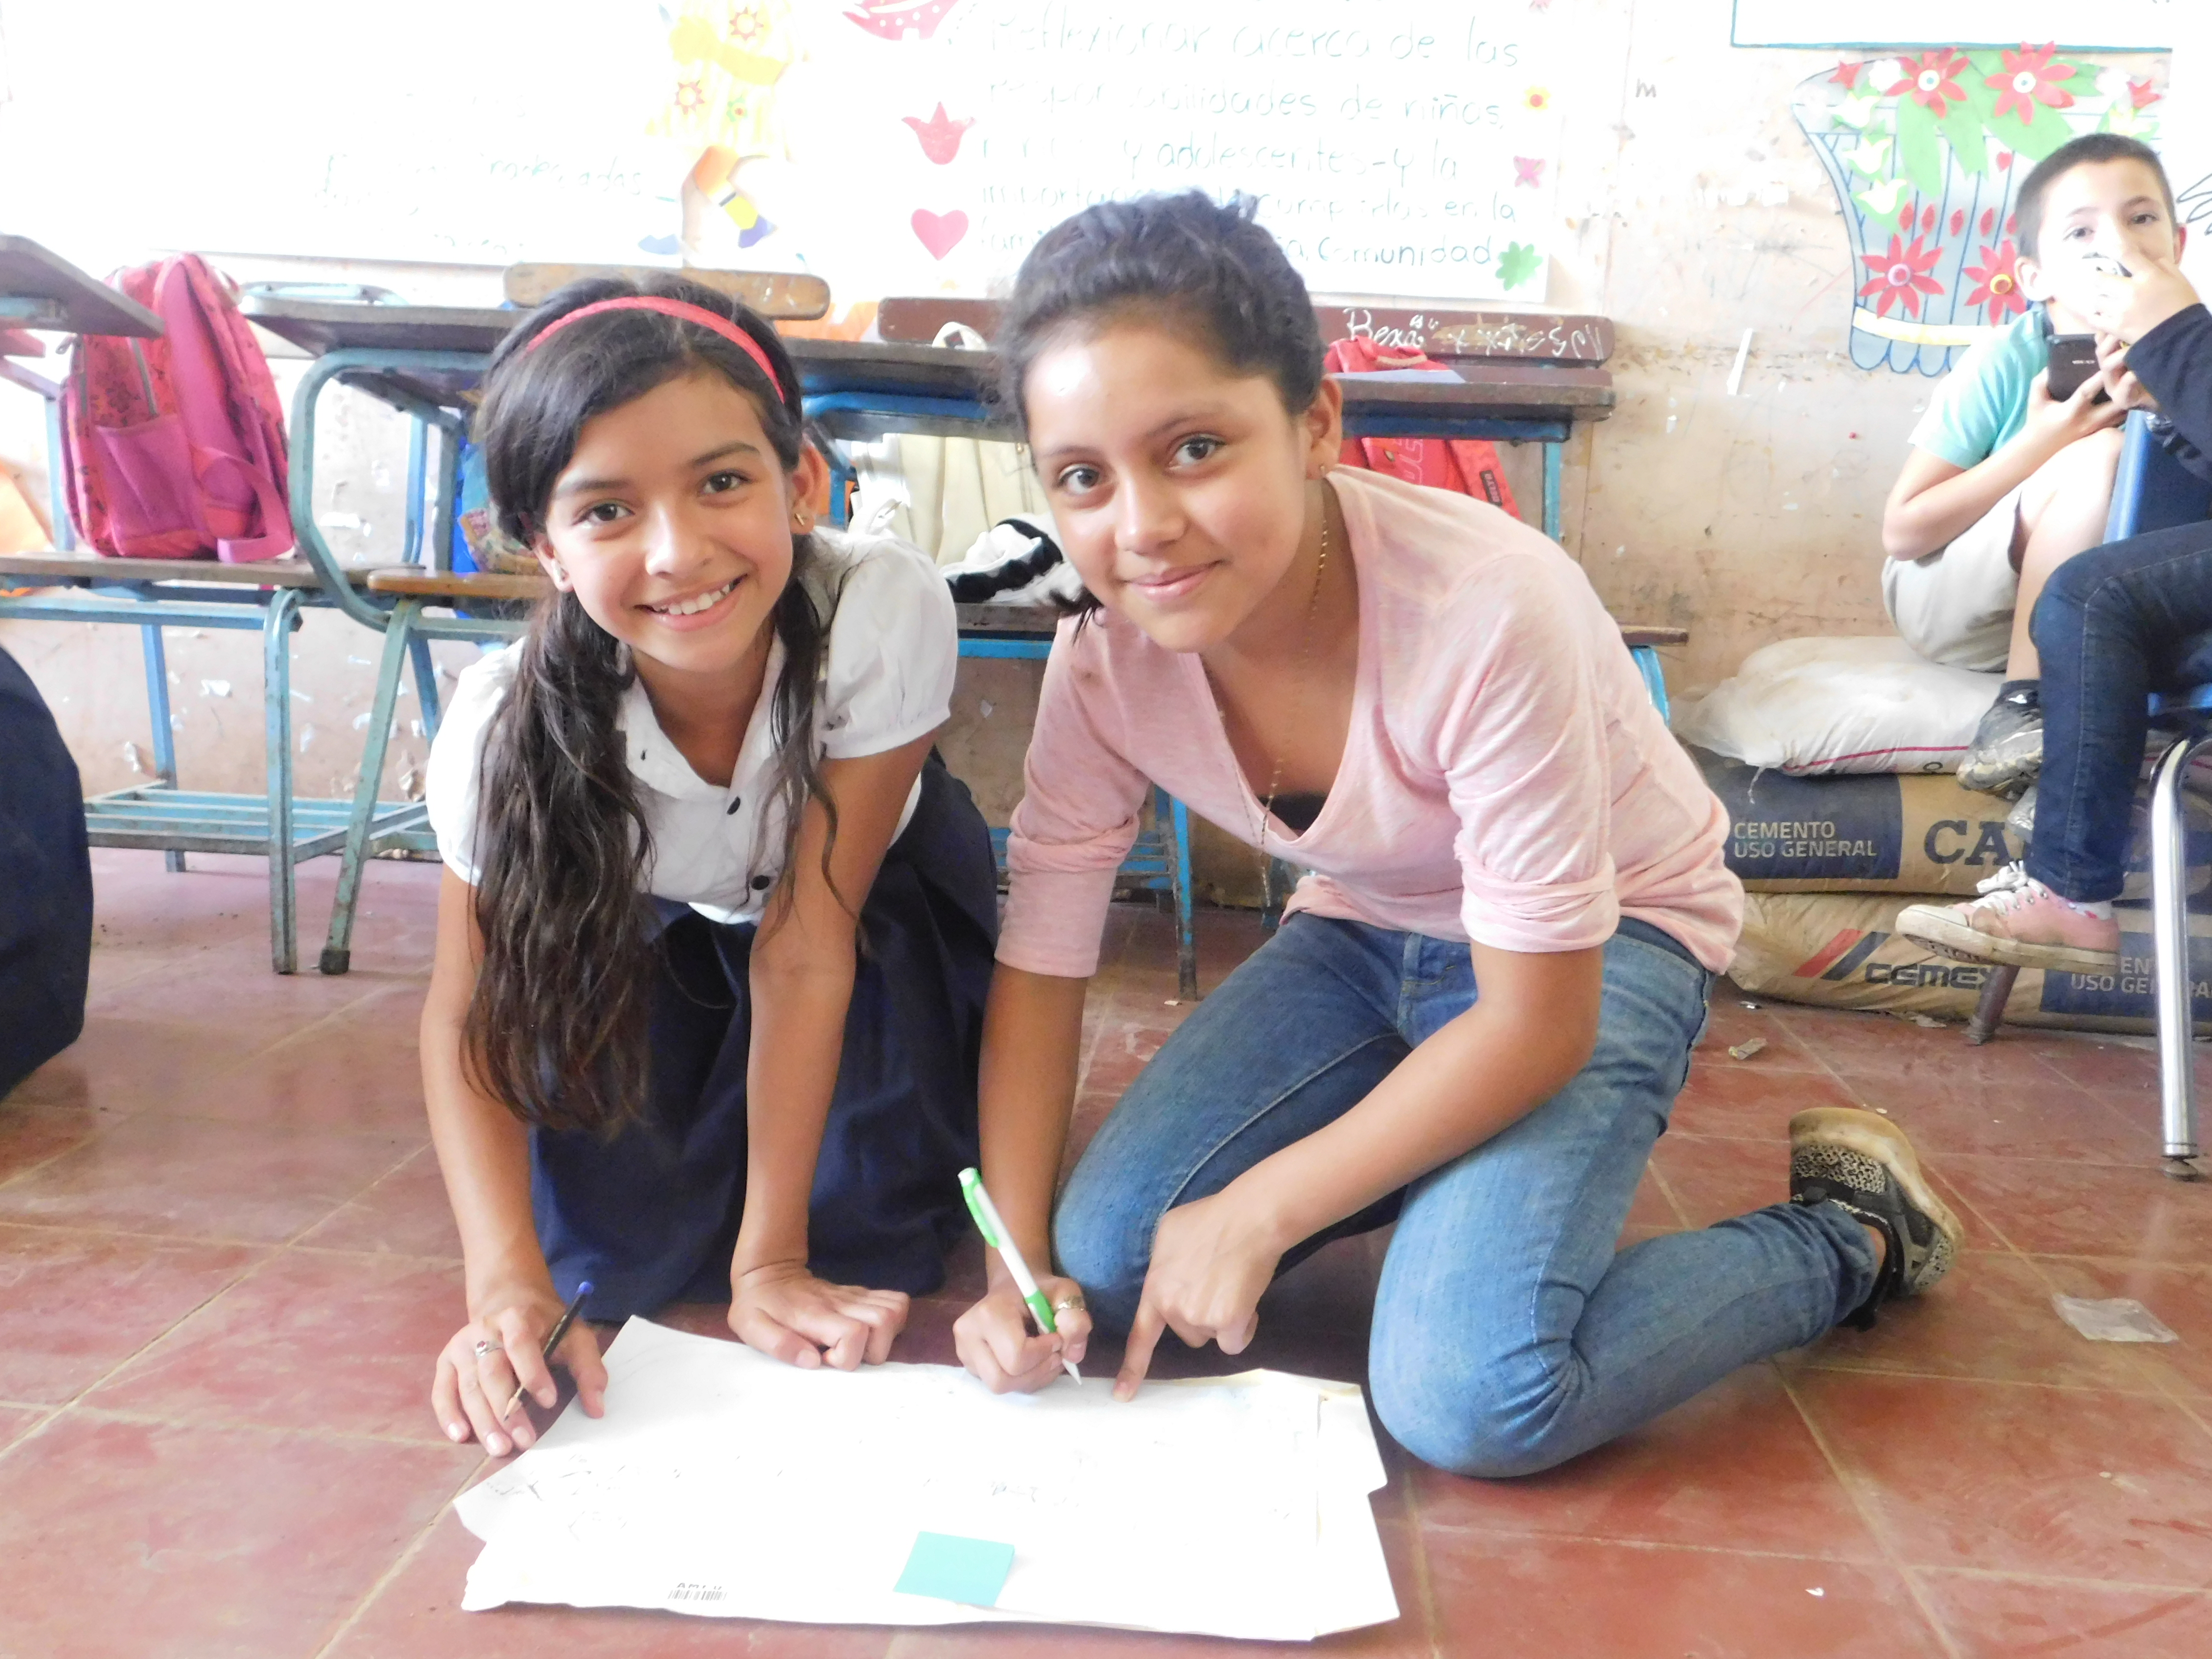 Imagen cortesía de World Vision Nicaragua. Niñas miembros del proyecto de puentes educativos